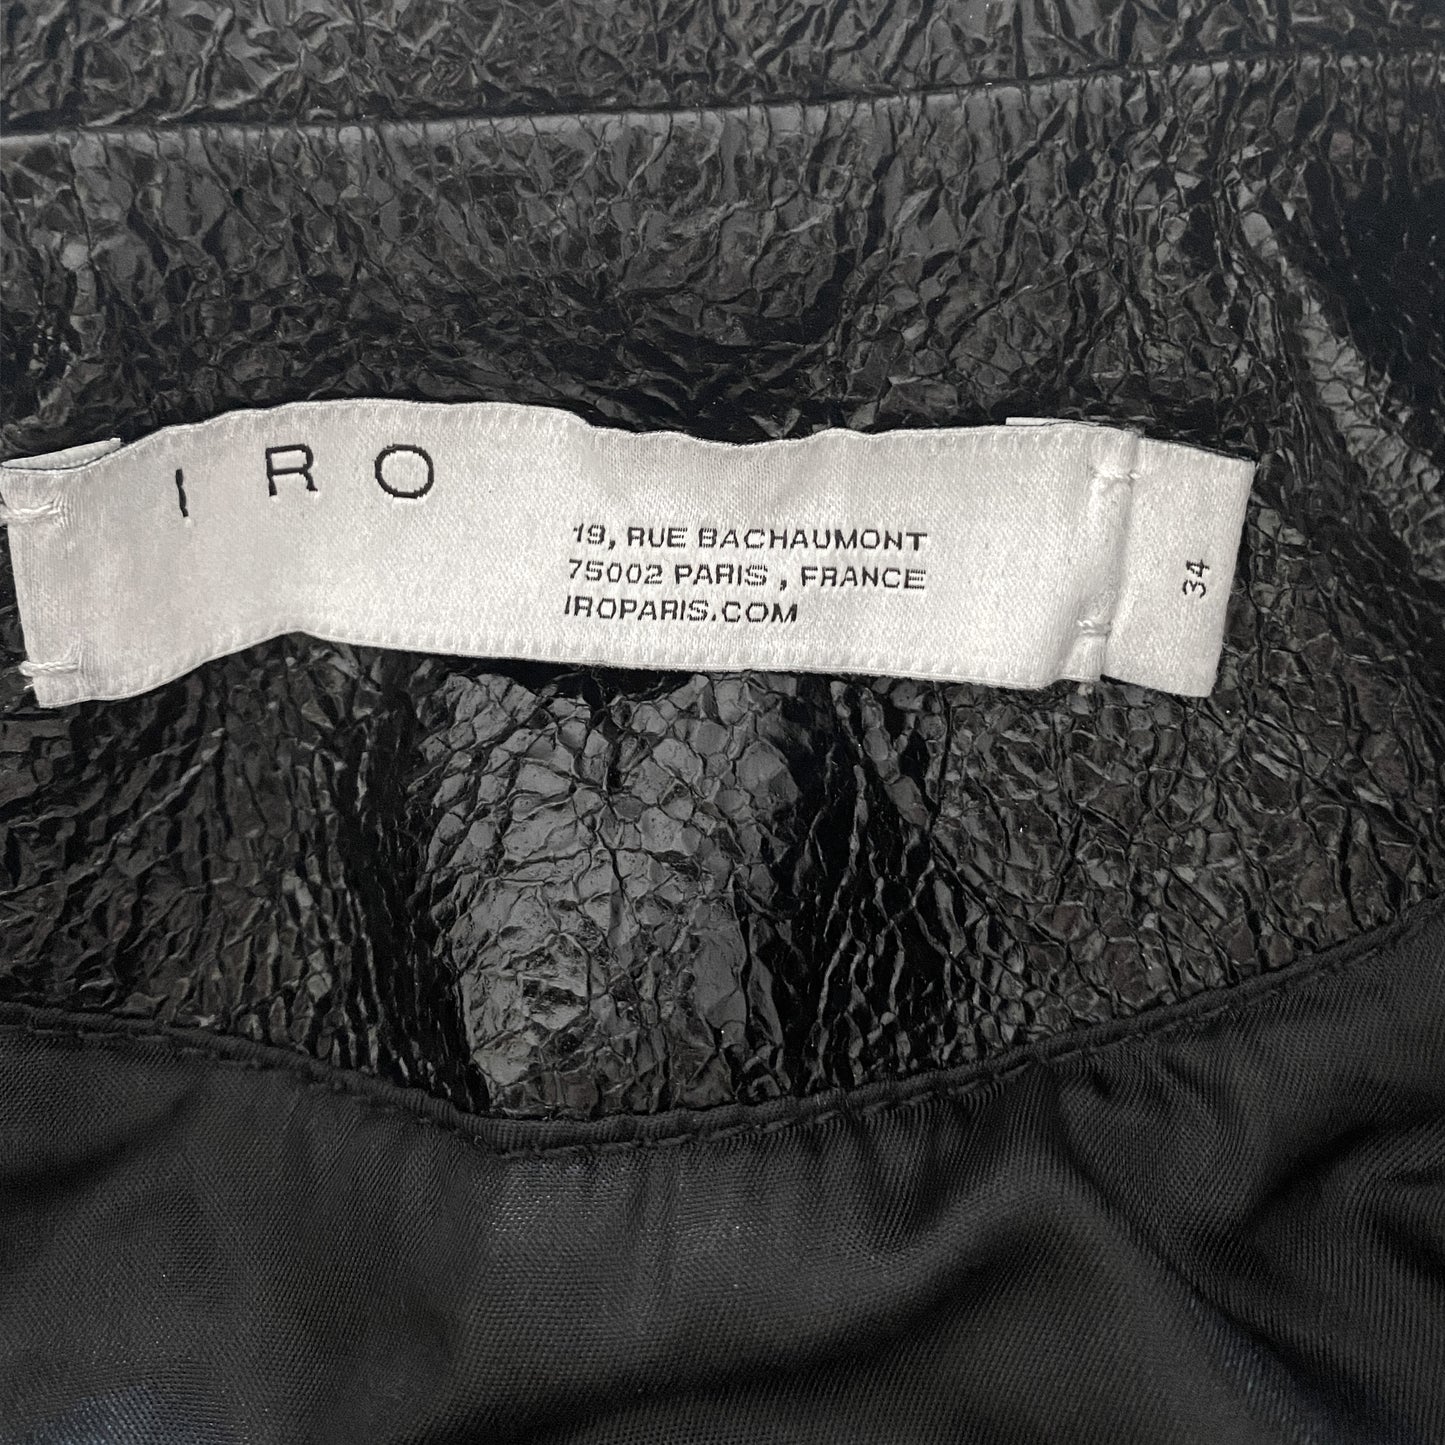 IRO Faces Cracked Patent Leather Bomber Jacket Size FR 34/ US 6